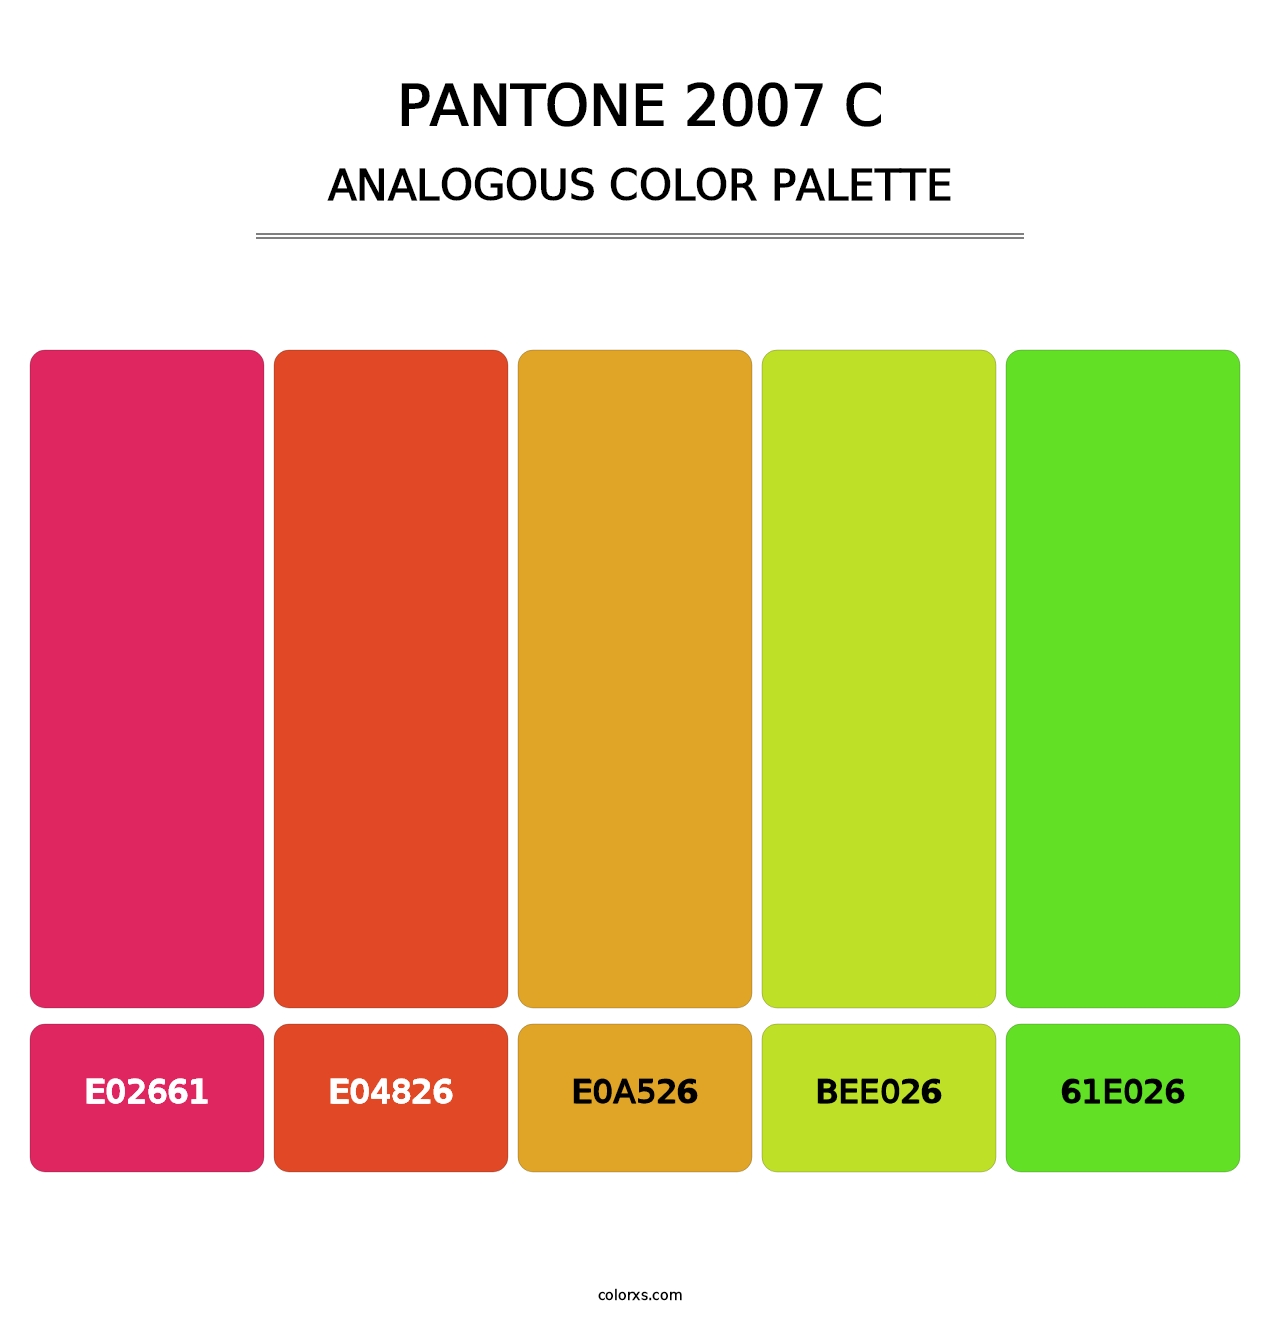 PANTONE 2007 C - Analogous Color Palette